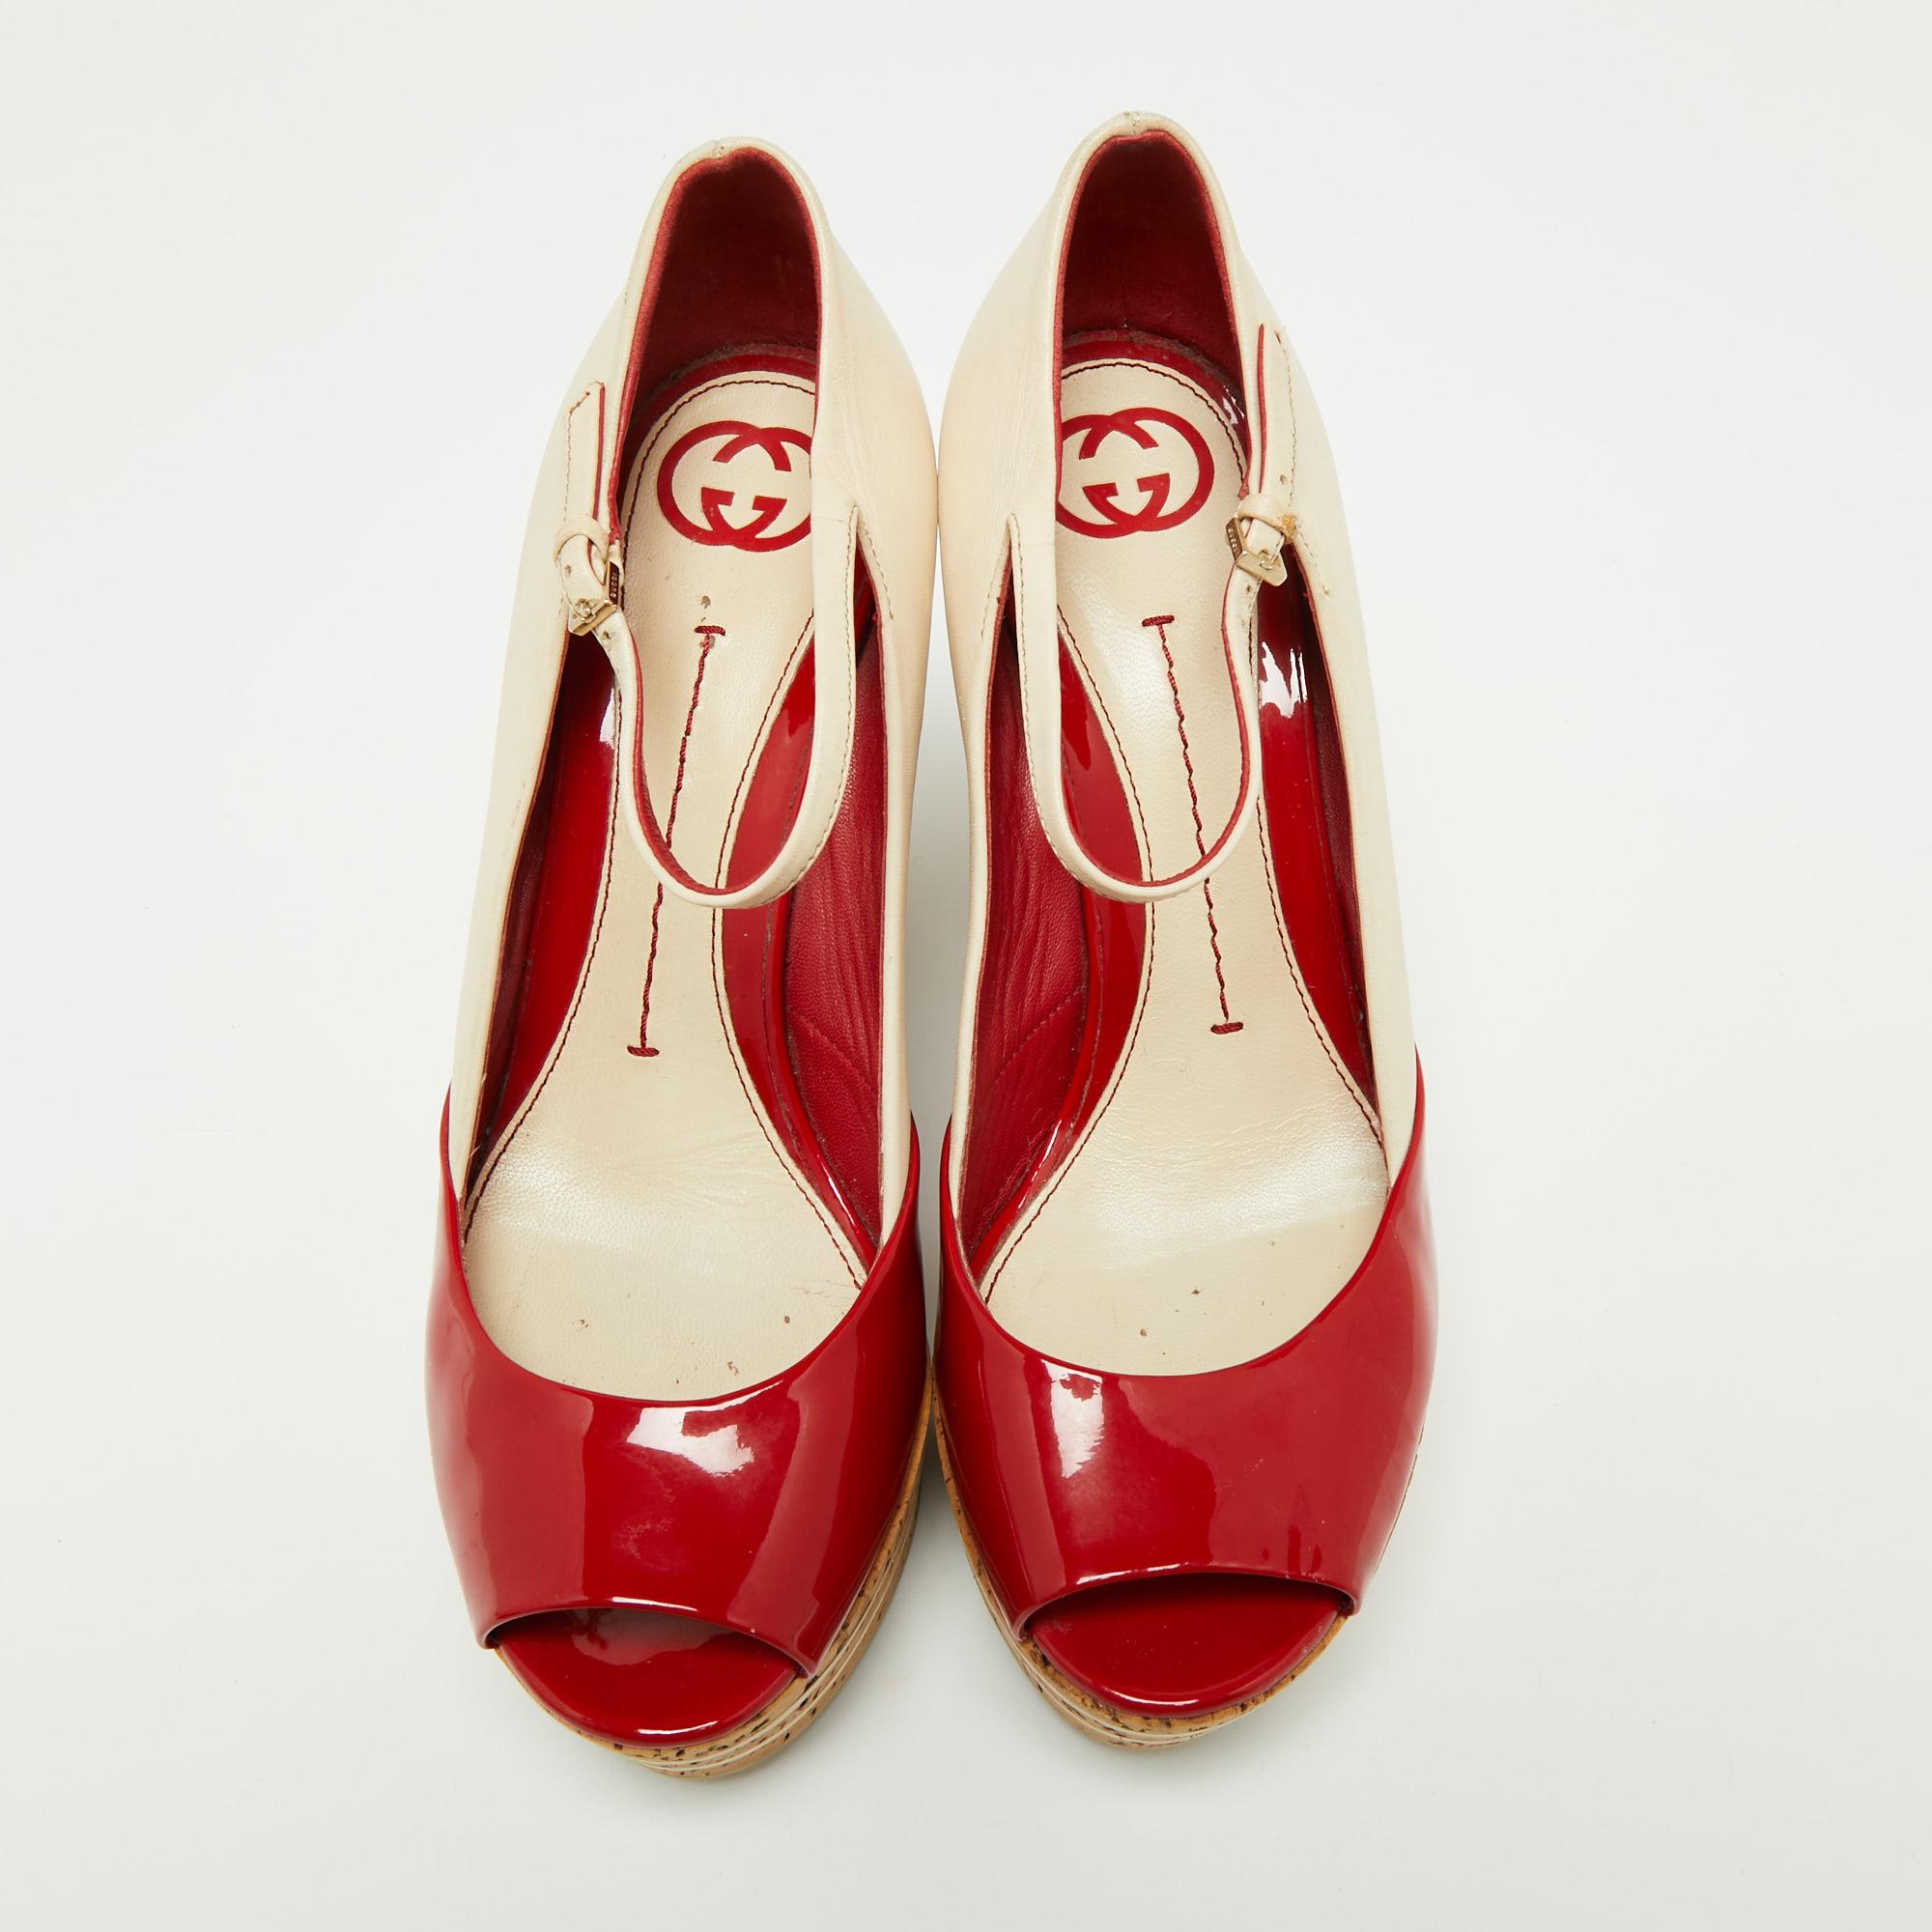 Gucci propose un style étonnant sous la forme de ces chaussures qui confèrent un aspect élégant à votre ensemble. Conçus pour être durables, ces talons compensés ont été créés en utilisant des matériaux de longue durée.

